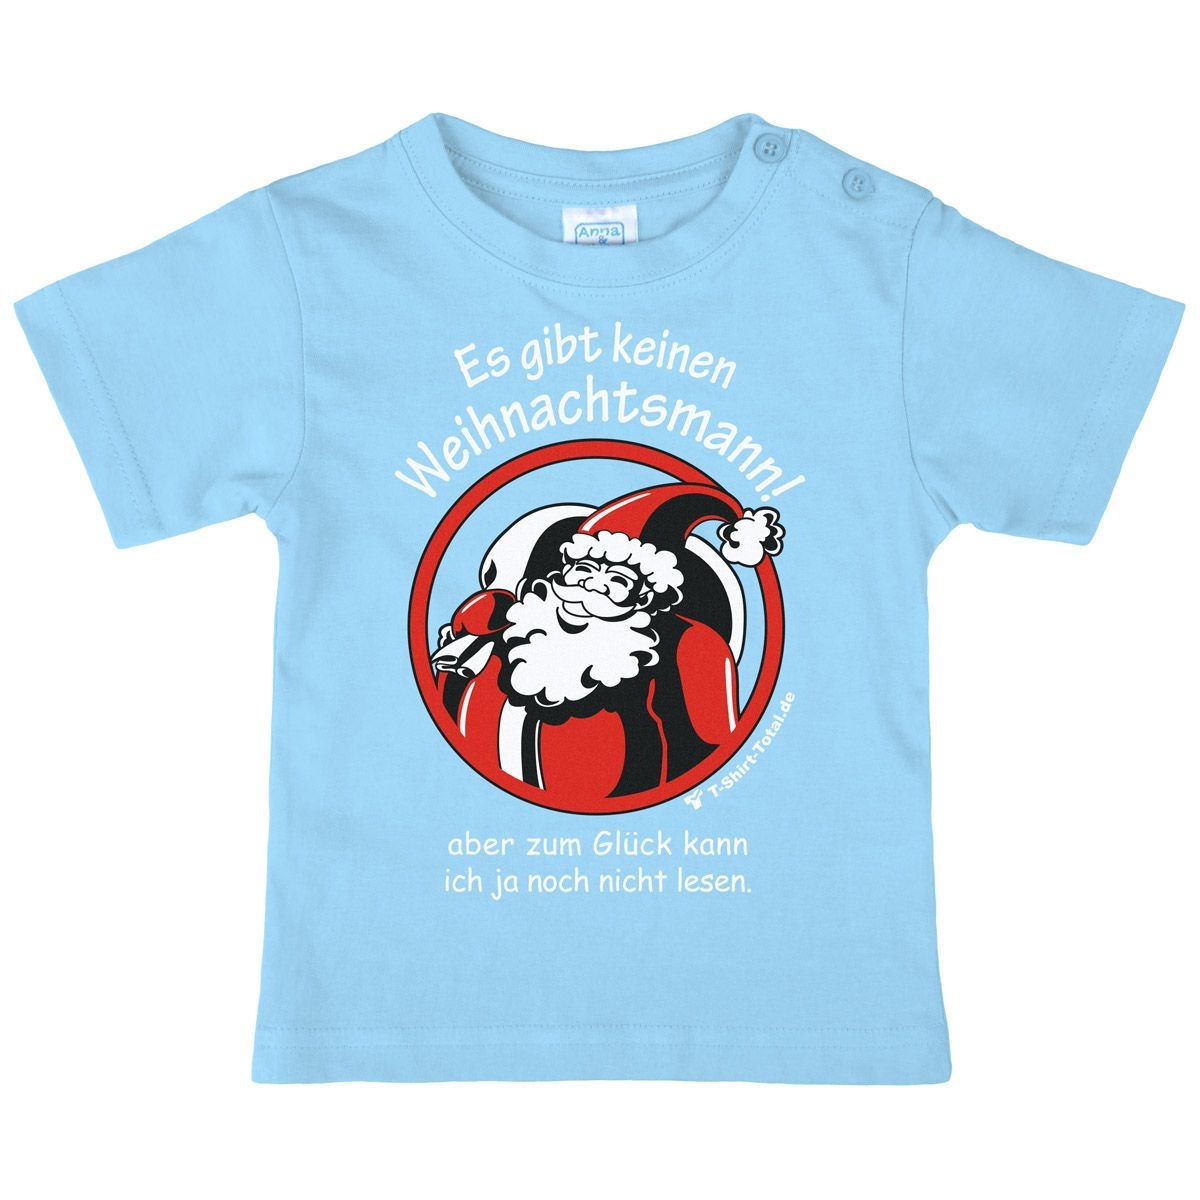 Gibt keinen Weihnachtsmann Kinder T-Shirt hellblau 80 / 86